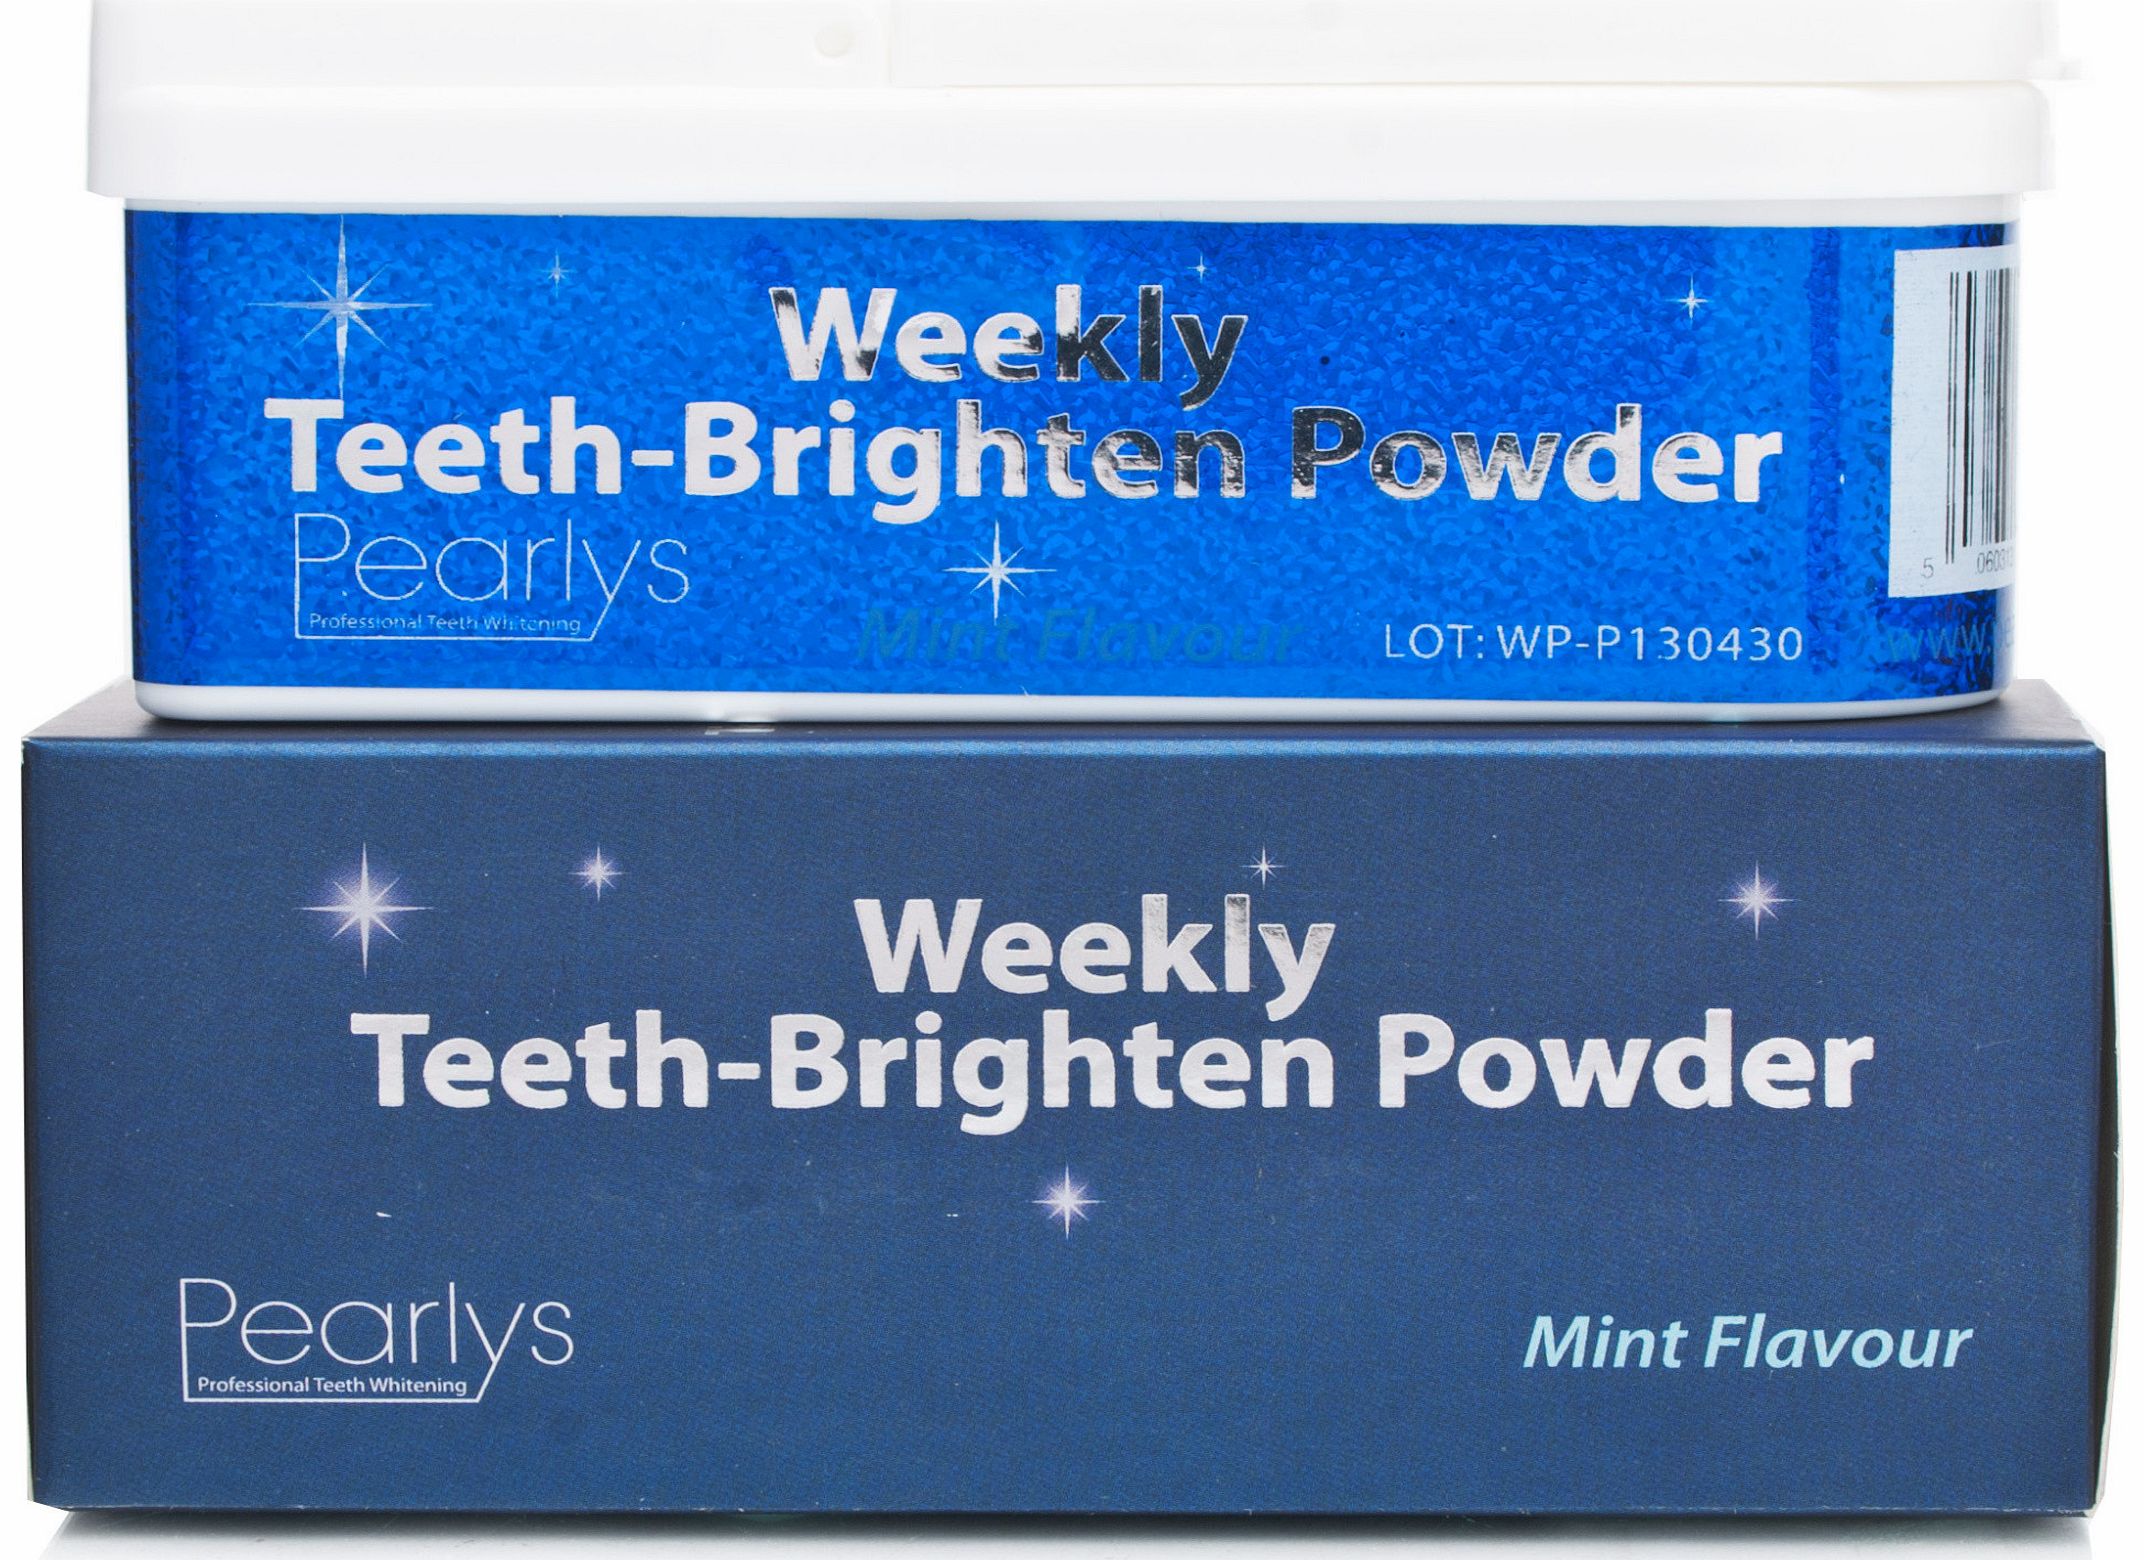 Pearlys Weekly Teeth Brightening Powder